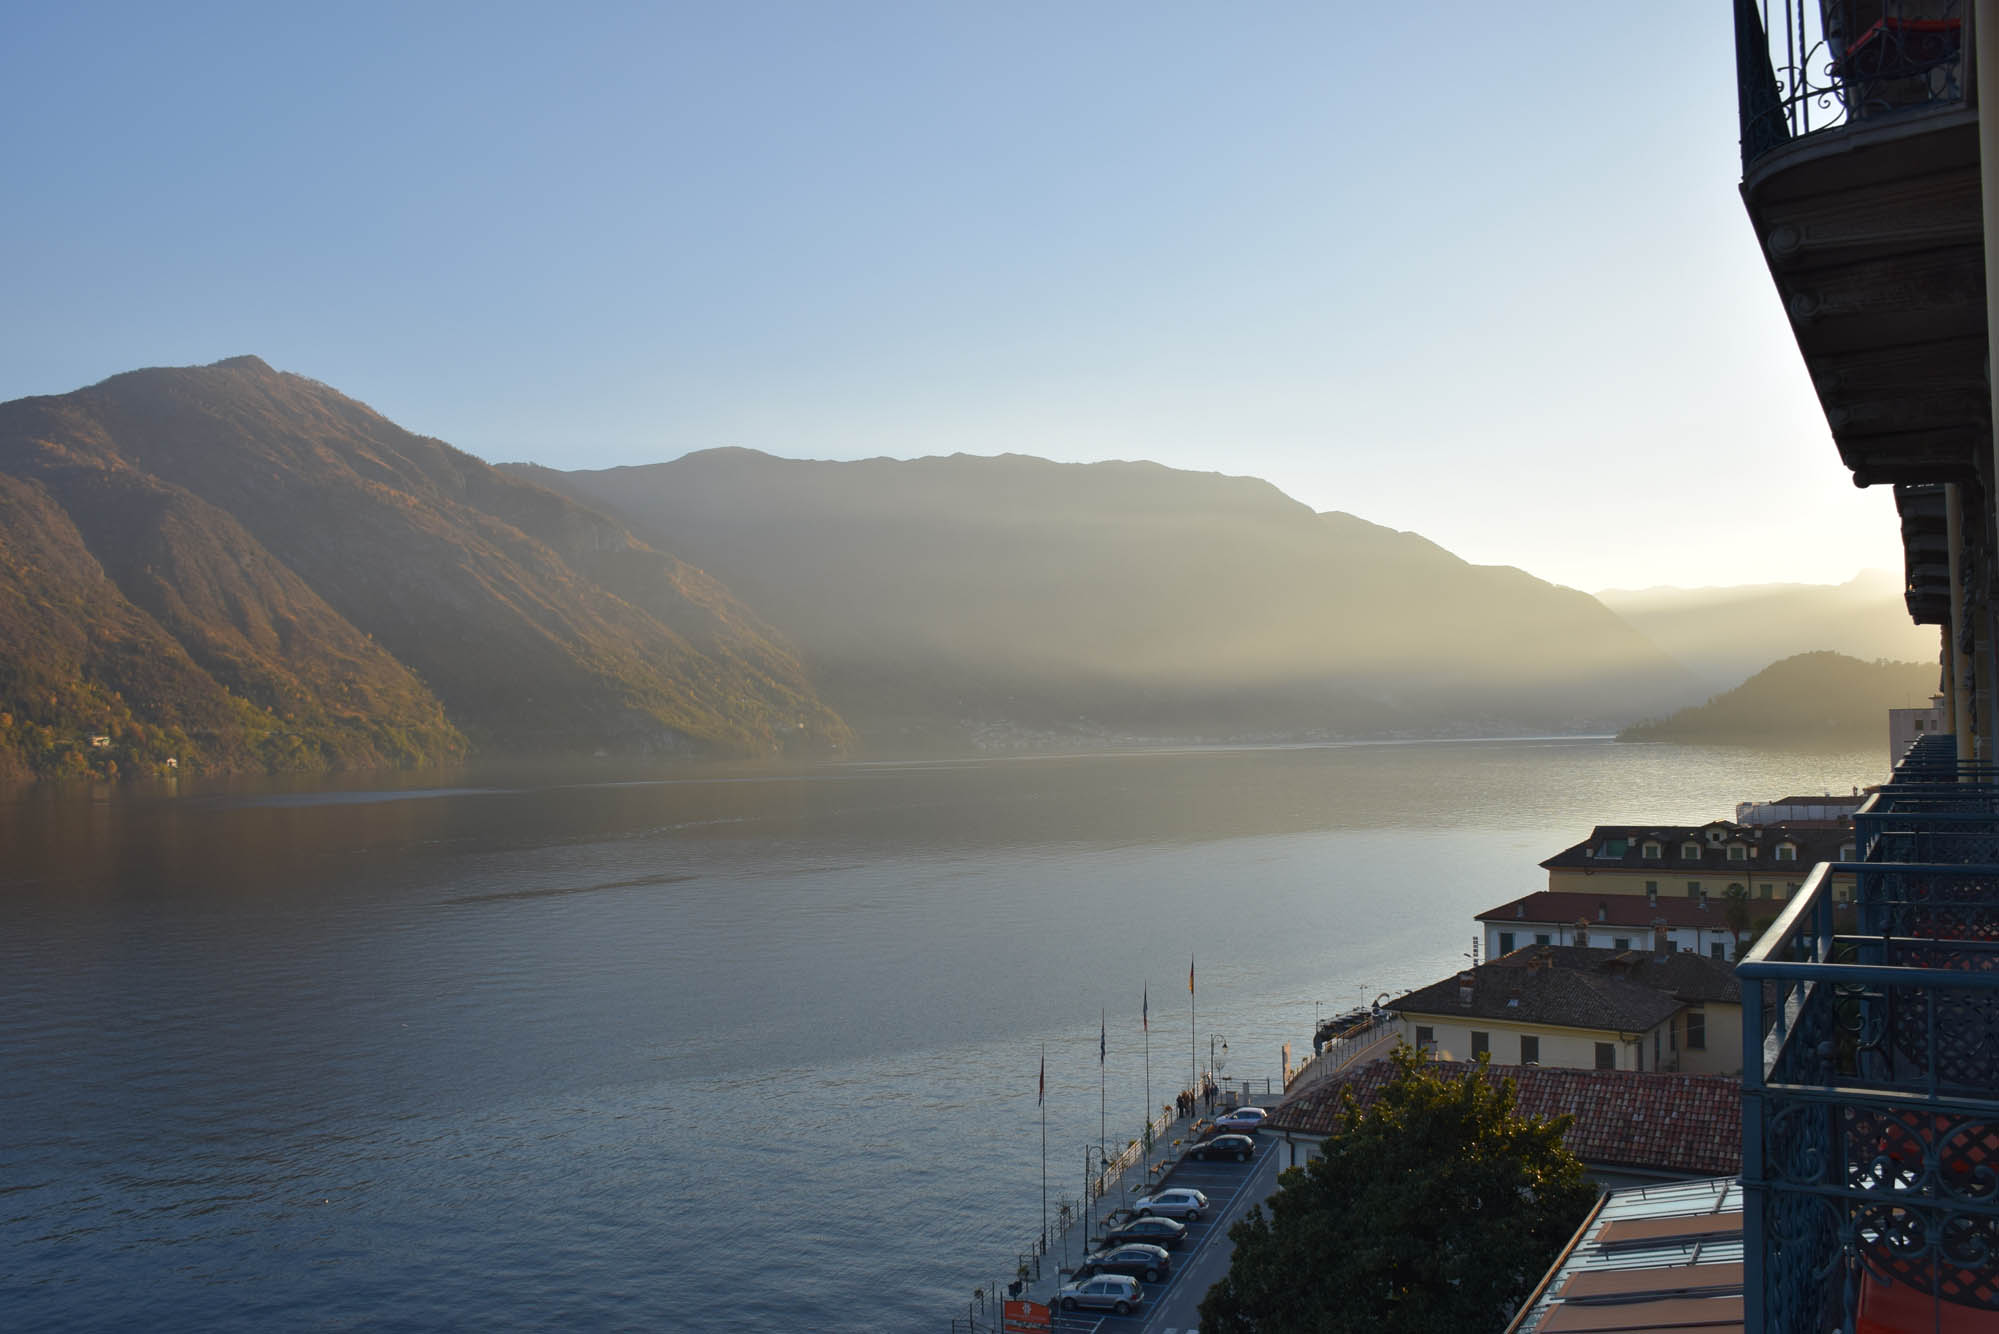 Grand Hotel Tremezzo Lago di Como Italia